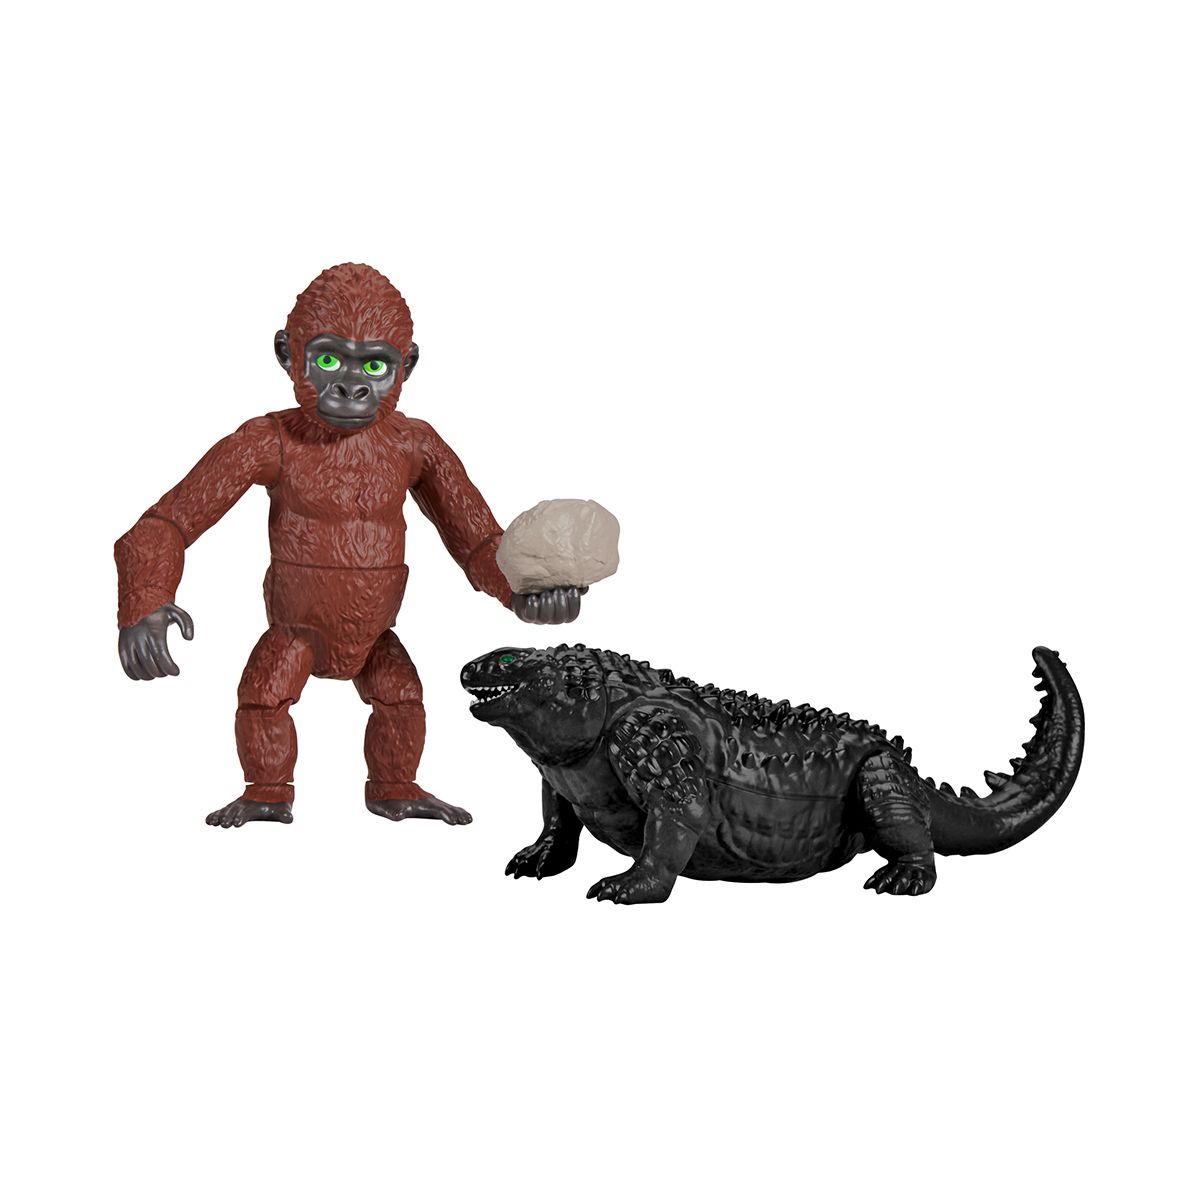 Набір фігурок Godzilla X Kong – Зуко з Дагом